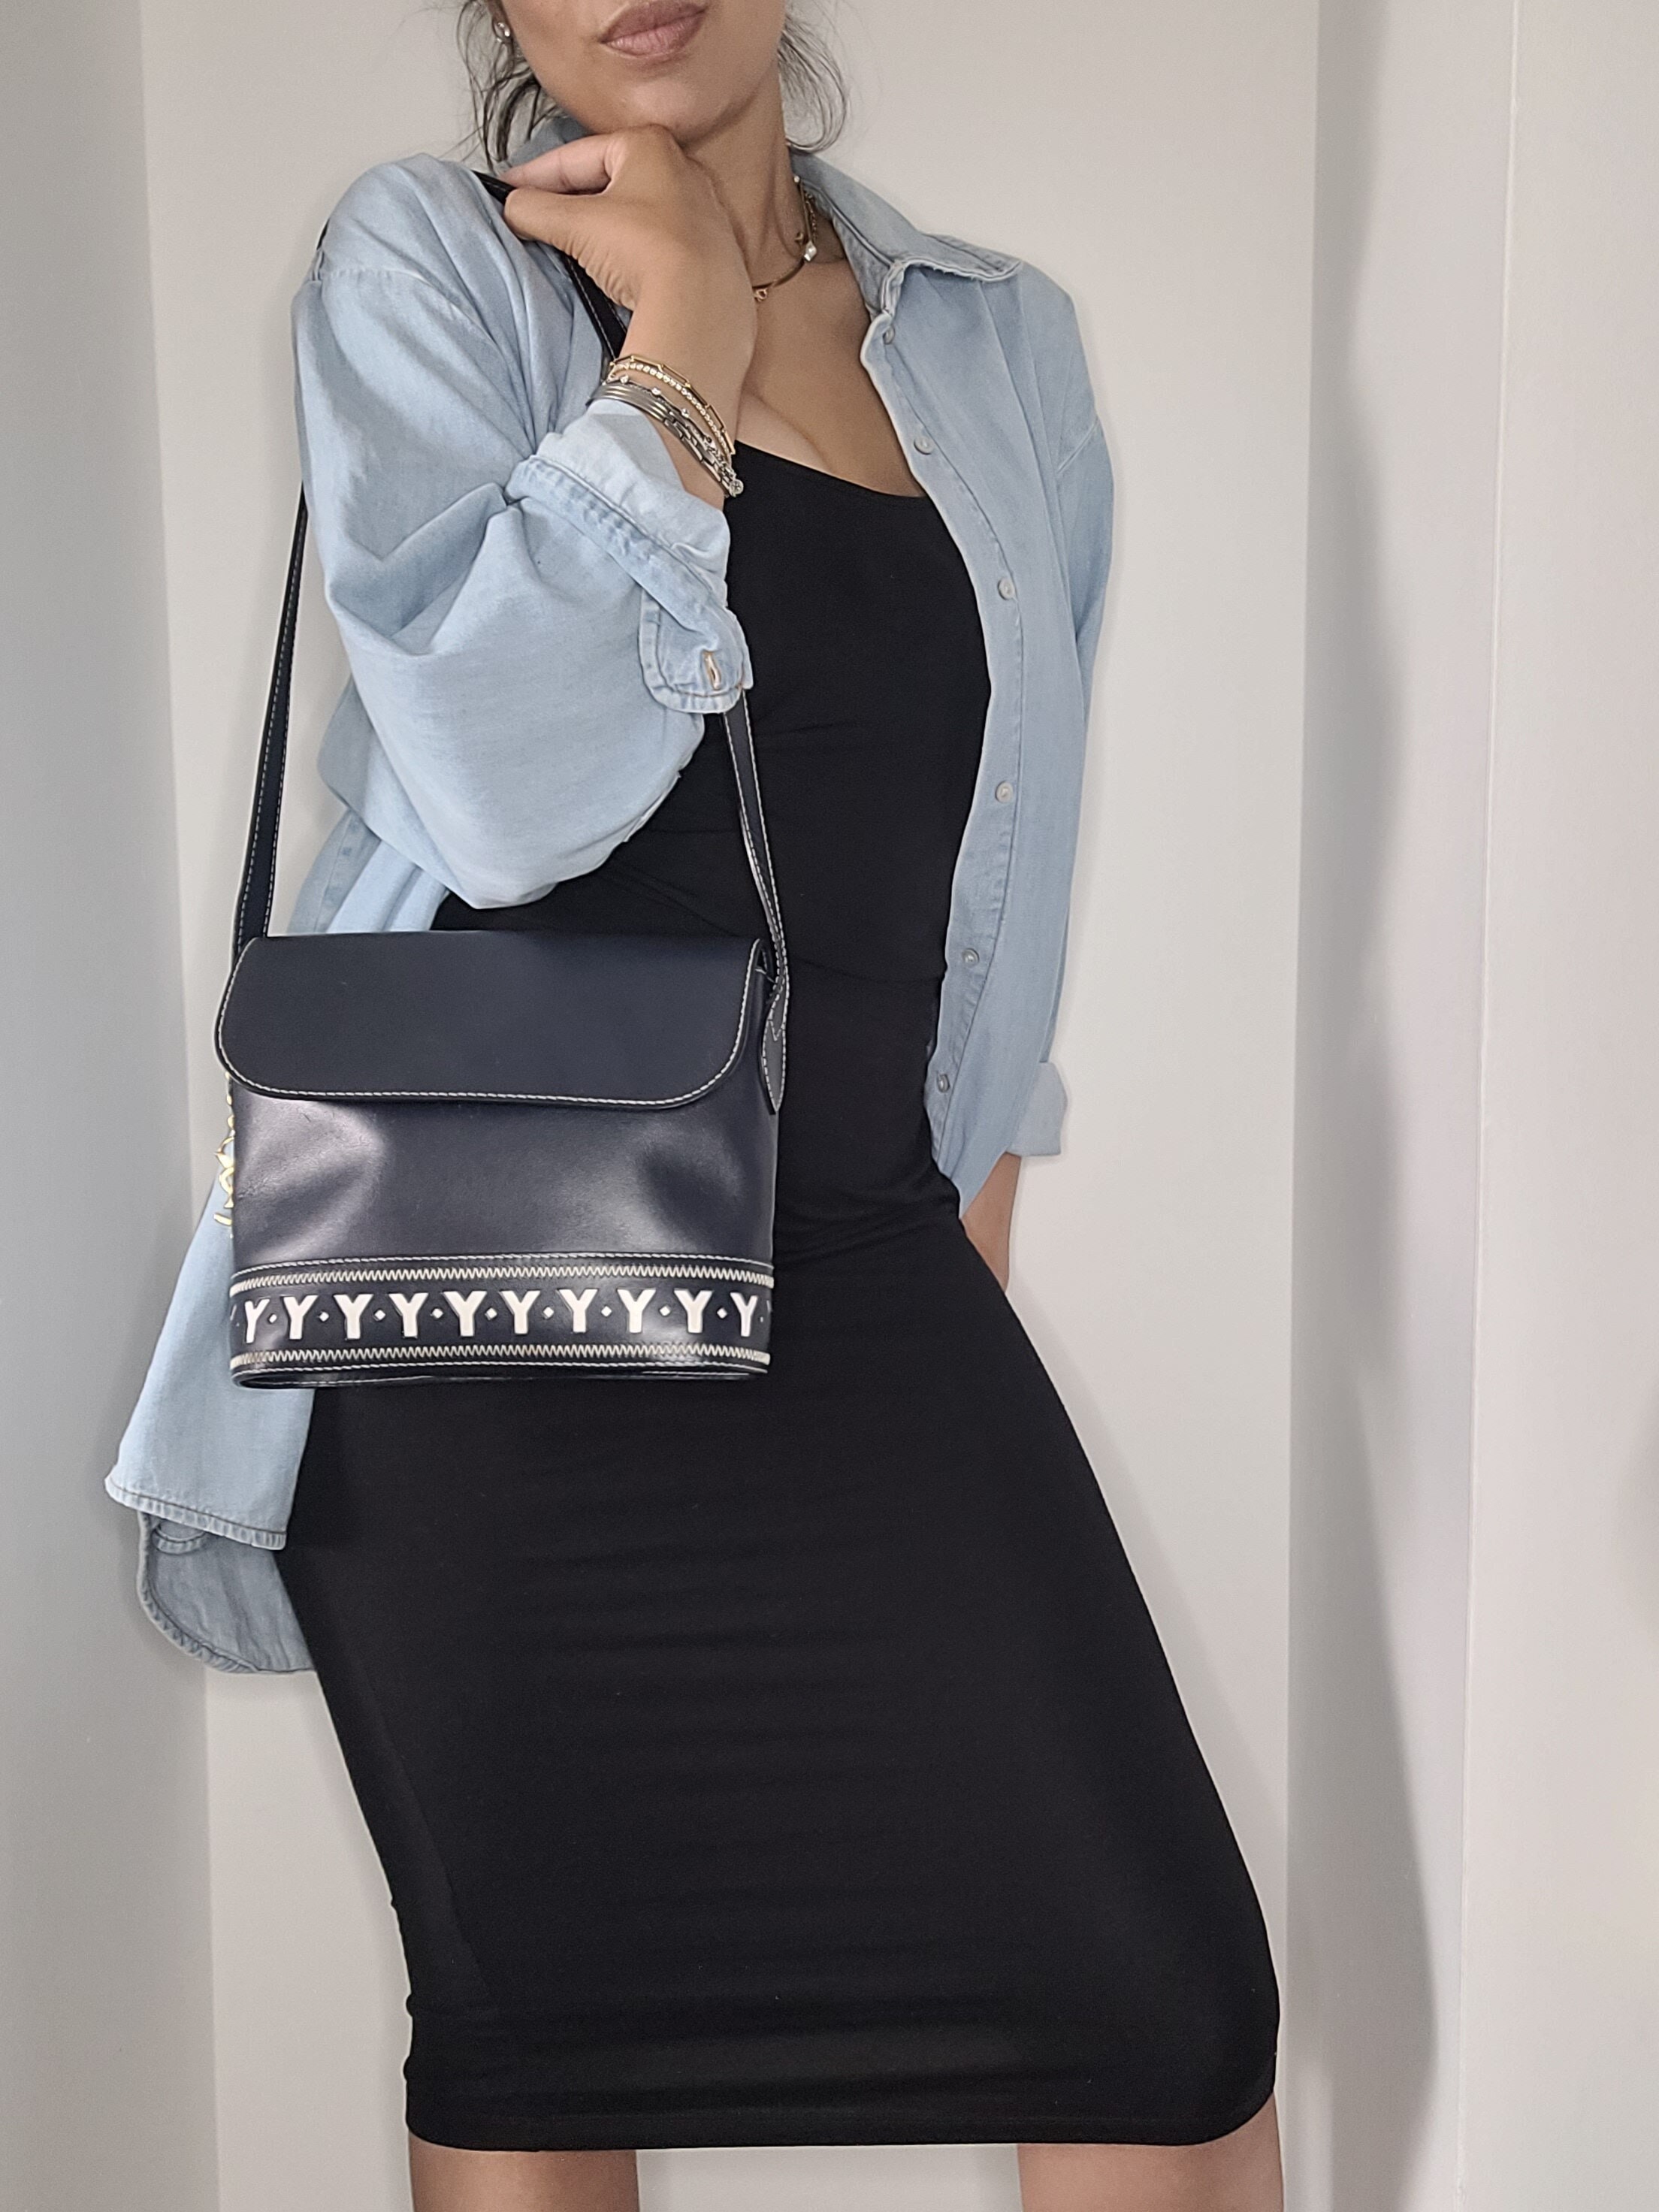 Saint Laurent Crossbody Bags for Women - Poshmark